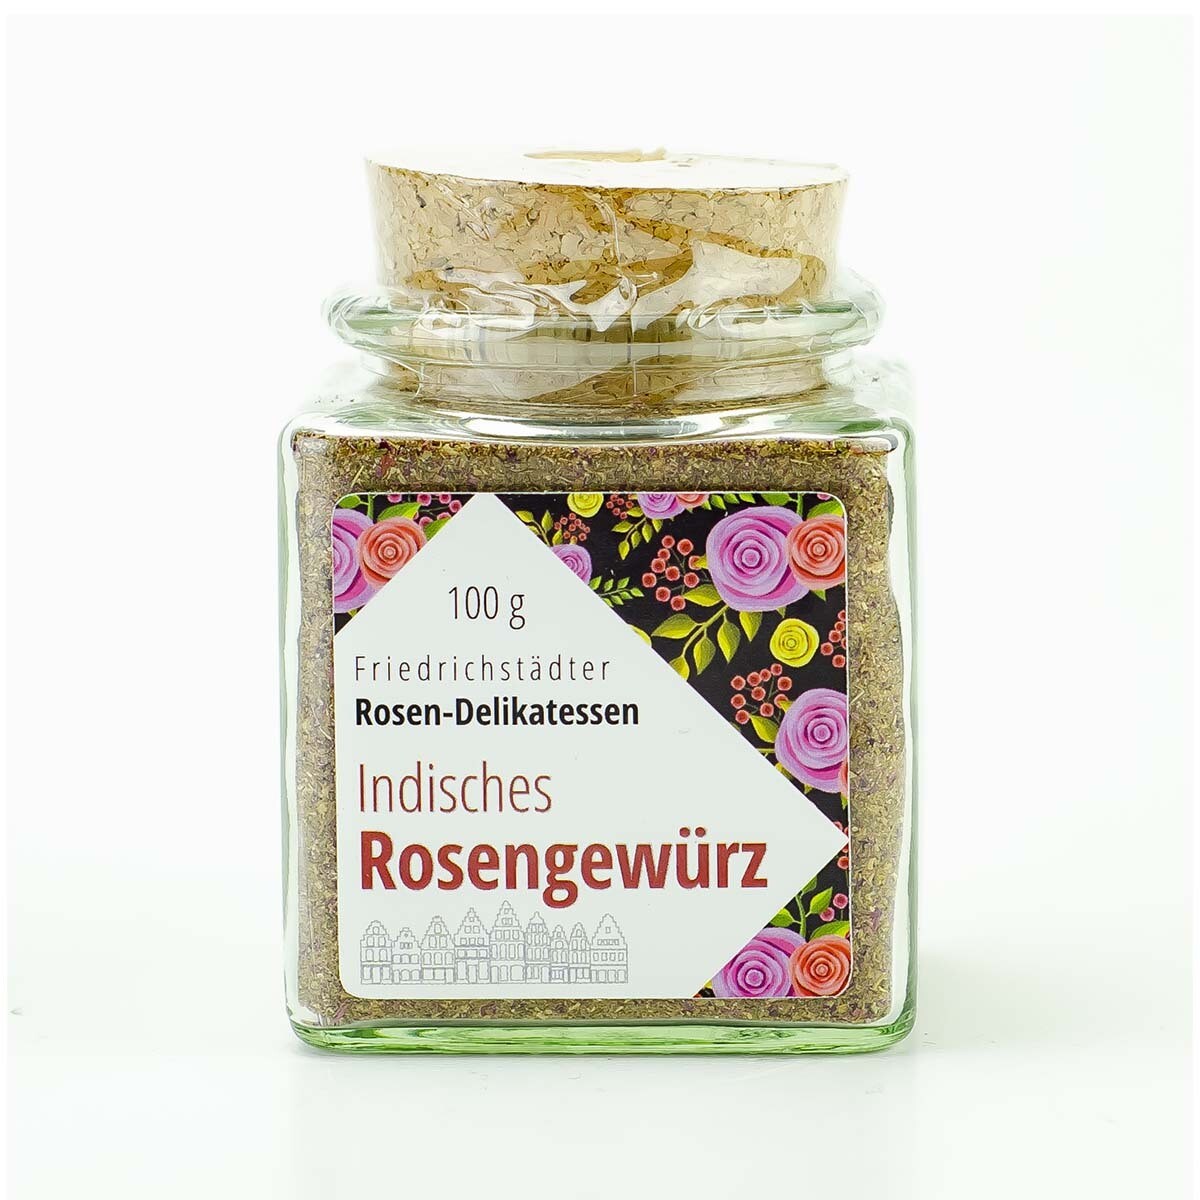 Indisches Rosengewürz - Friedrichstädter Rosen-Delikatessen